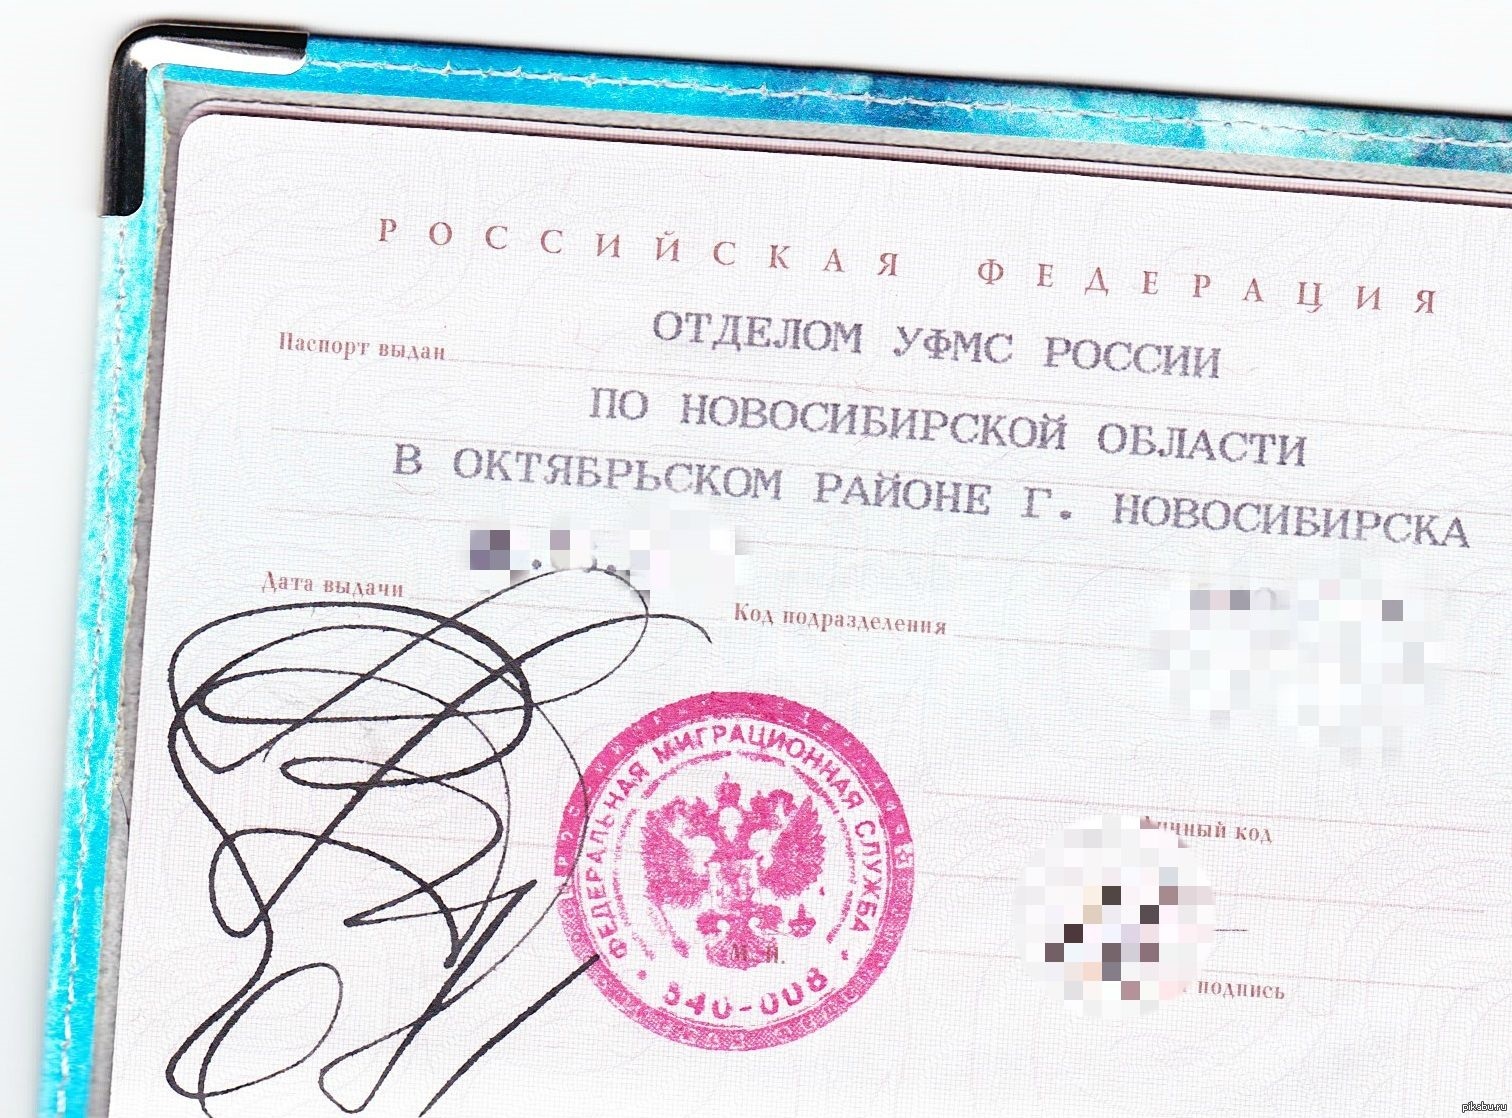 Паспортный стол новосибирской. Печать миграционной службы.